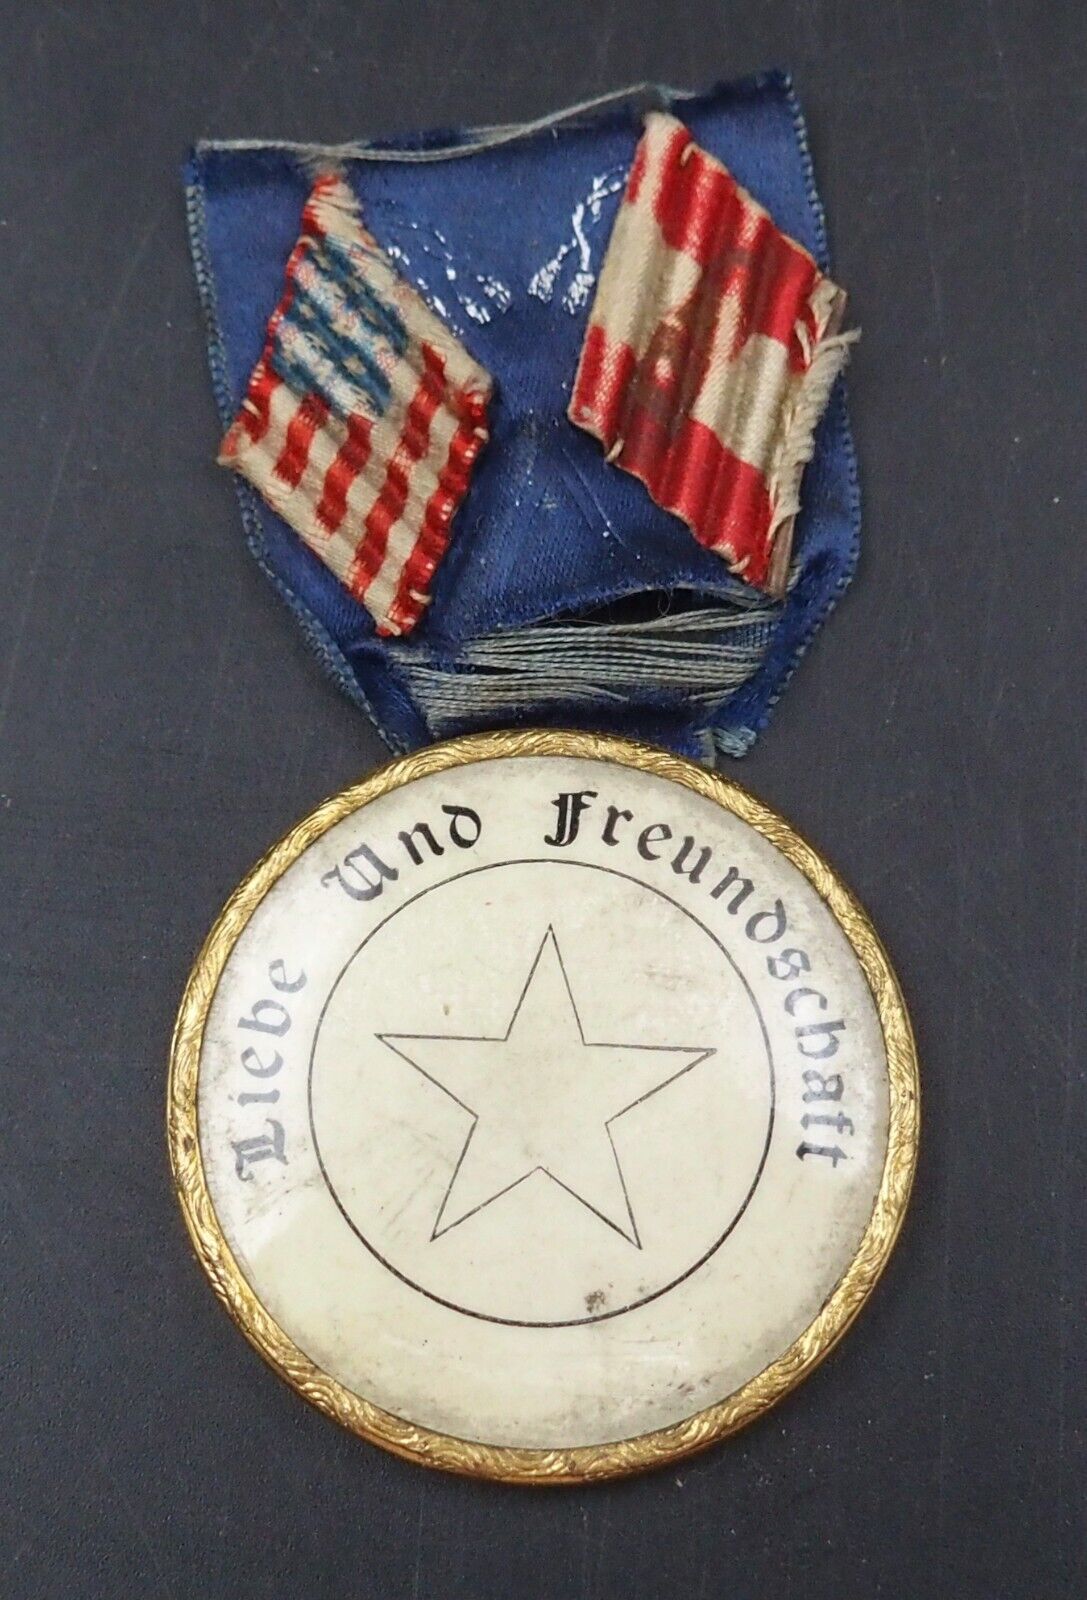 Antique German USA Liebe Und Freundschaft Love & Friendship Medal & Ribbon #W042